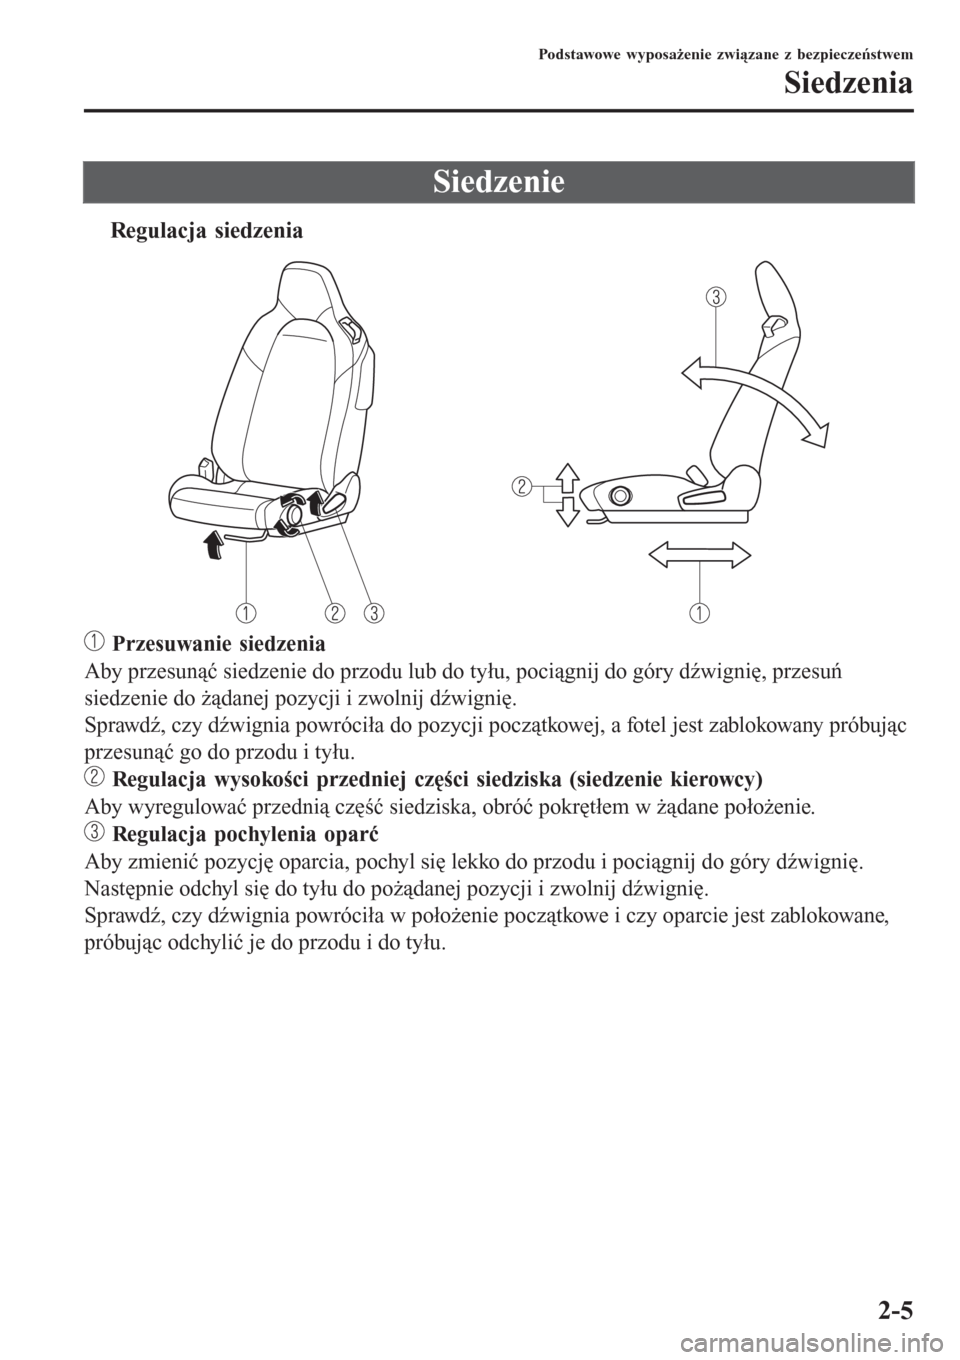 MAZDA MODEL MX-5 2015  Instrukcja Obsługi (in Polish) Siedzenie
tRegulacja siedzenia
 Przesuwanie siedzenia
Aby przesunąć siedzenie do przodu lub do tyłu, pociągnij do góry dźwignię, przesuń
siedzenie do żądanej pozycji i zwolnij dźwignię.
Sp